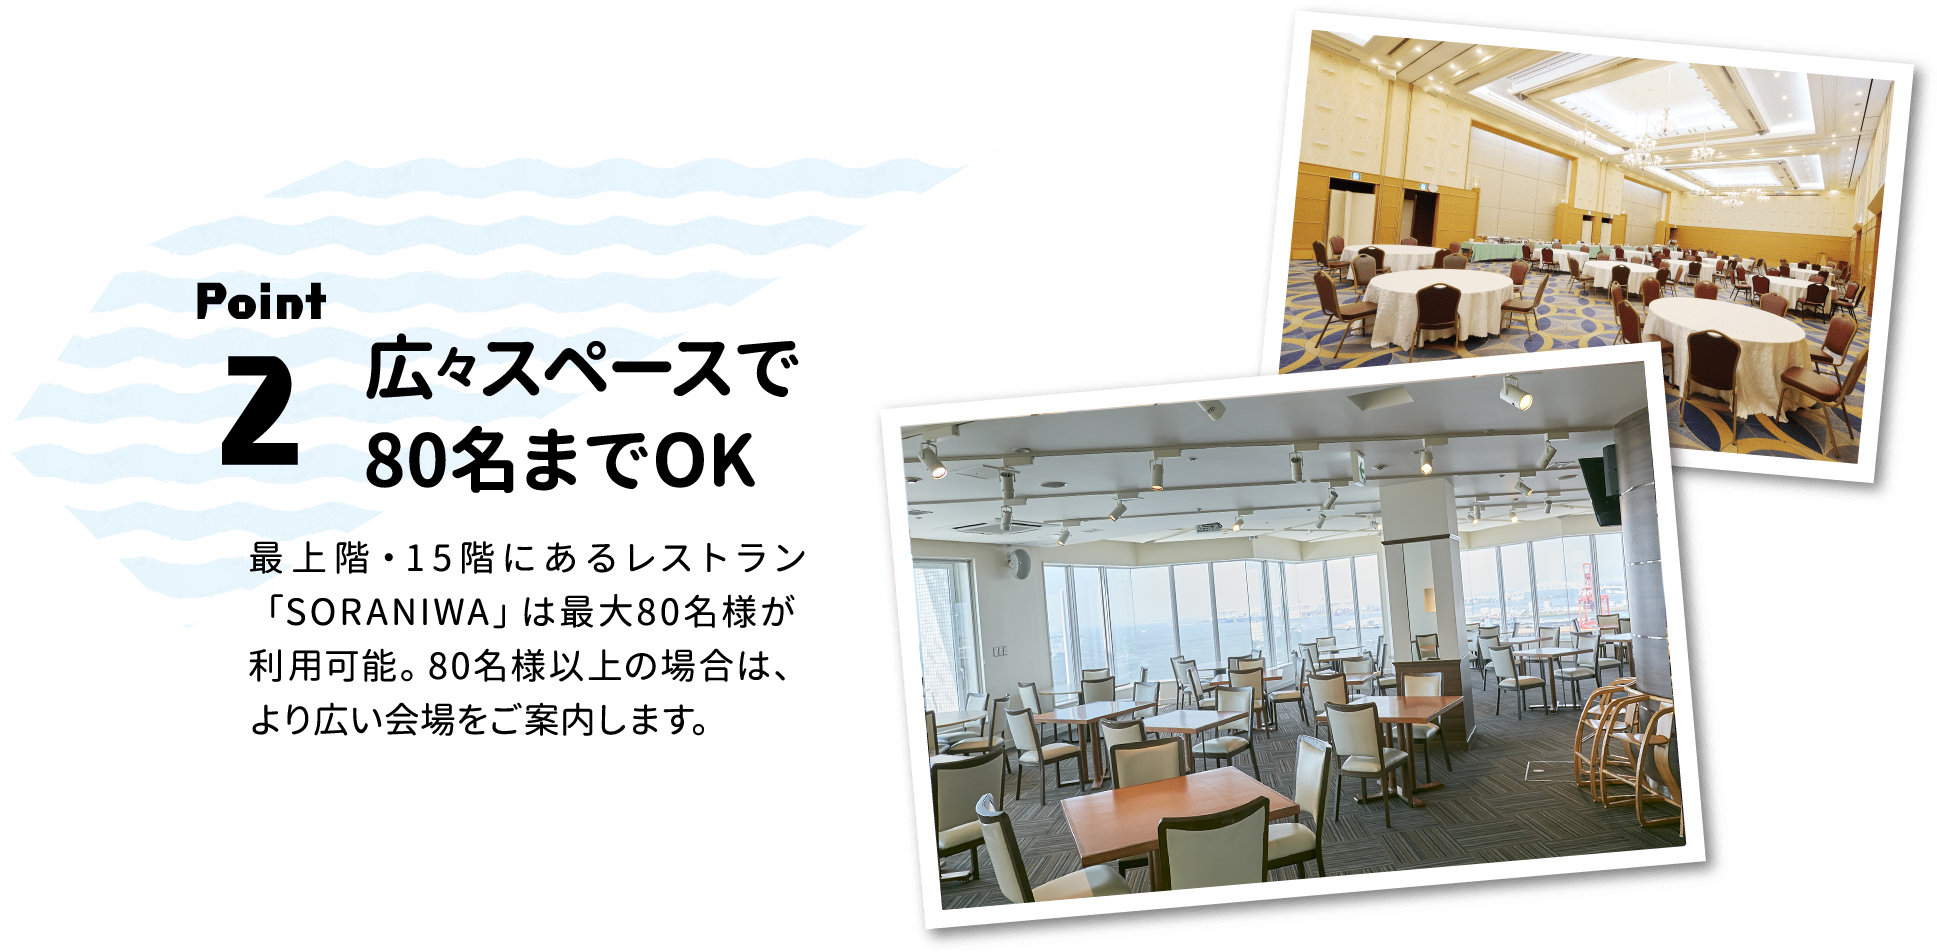 Point.2 広々スペースで80名までOK：最上階・1 5 階にあるレストラン「SORANIWA」は最大80名様が利用可能。80名様以上の場合は、より広い会場をご案内します。